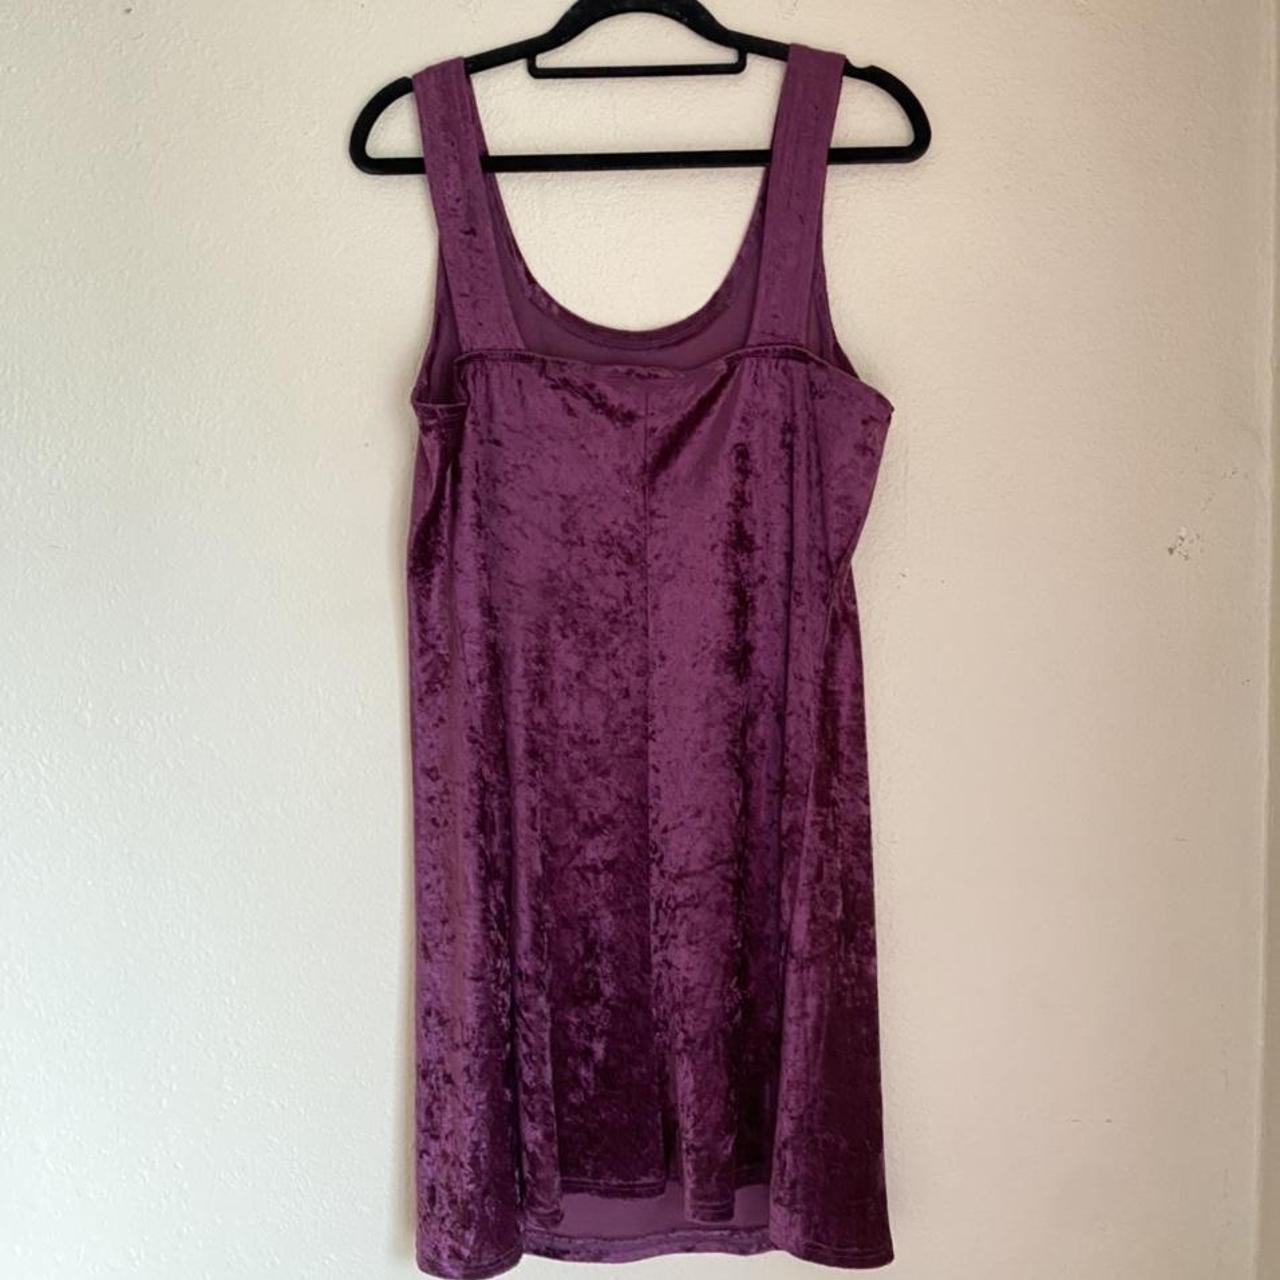 Hannah purple velvet 90s mini dress New ! I bought... - Depop